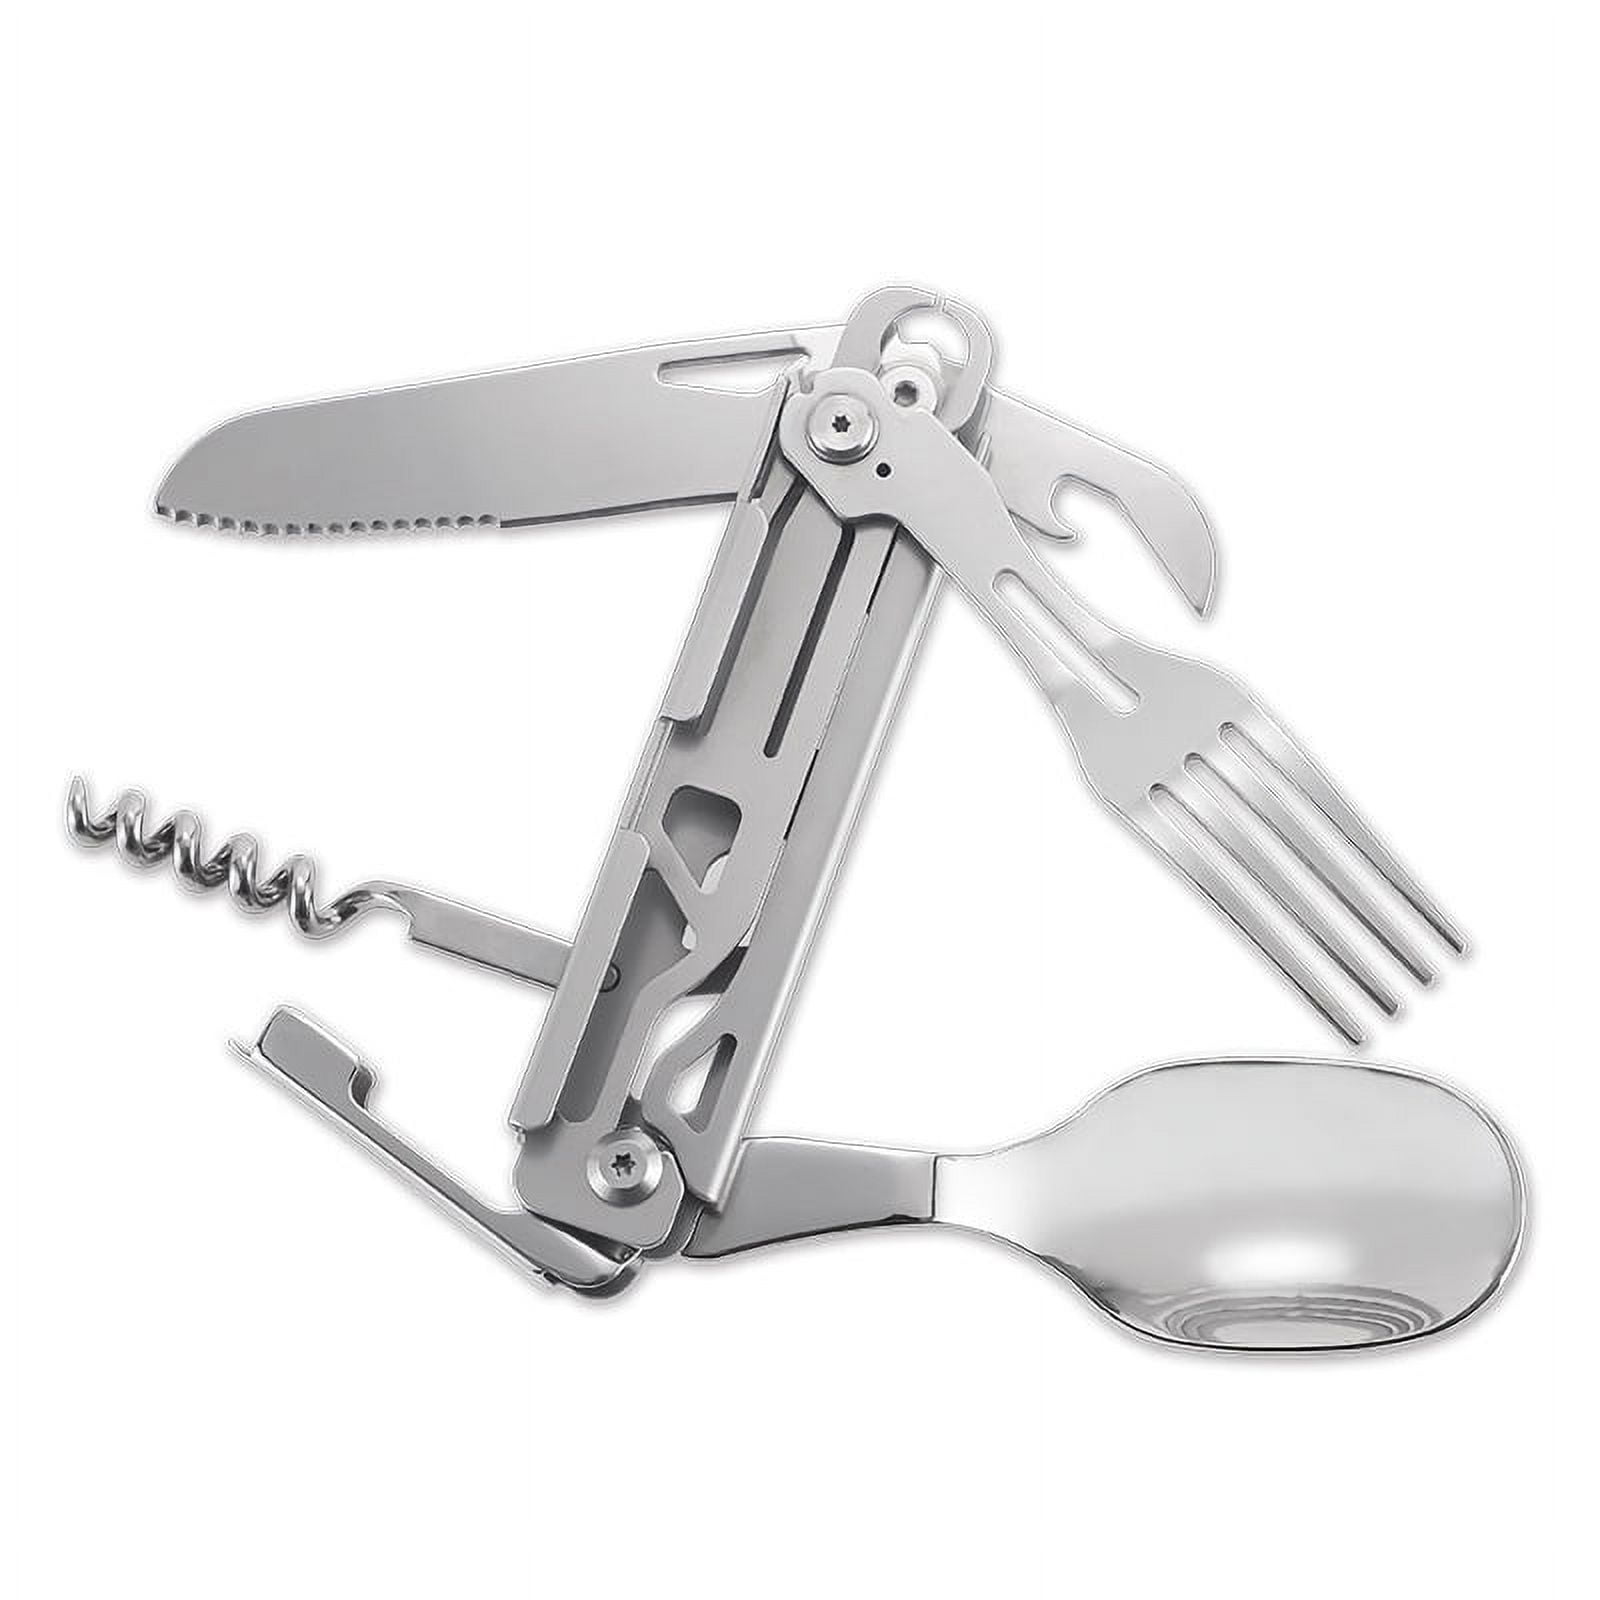 Stainless Steel Kitchen Utensil Set 7-in-1 Folding Tableware (Fork/Knife/Spoon/Bottle  Opener) for